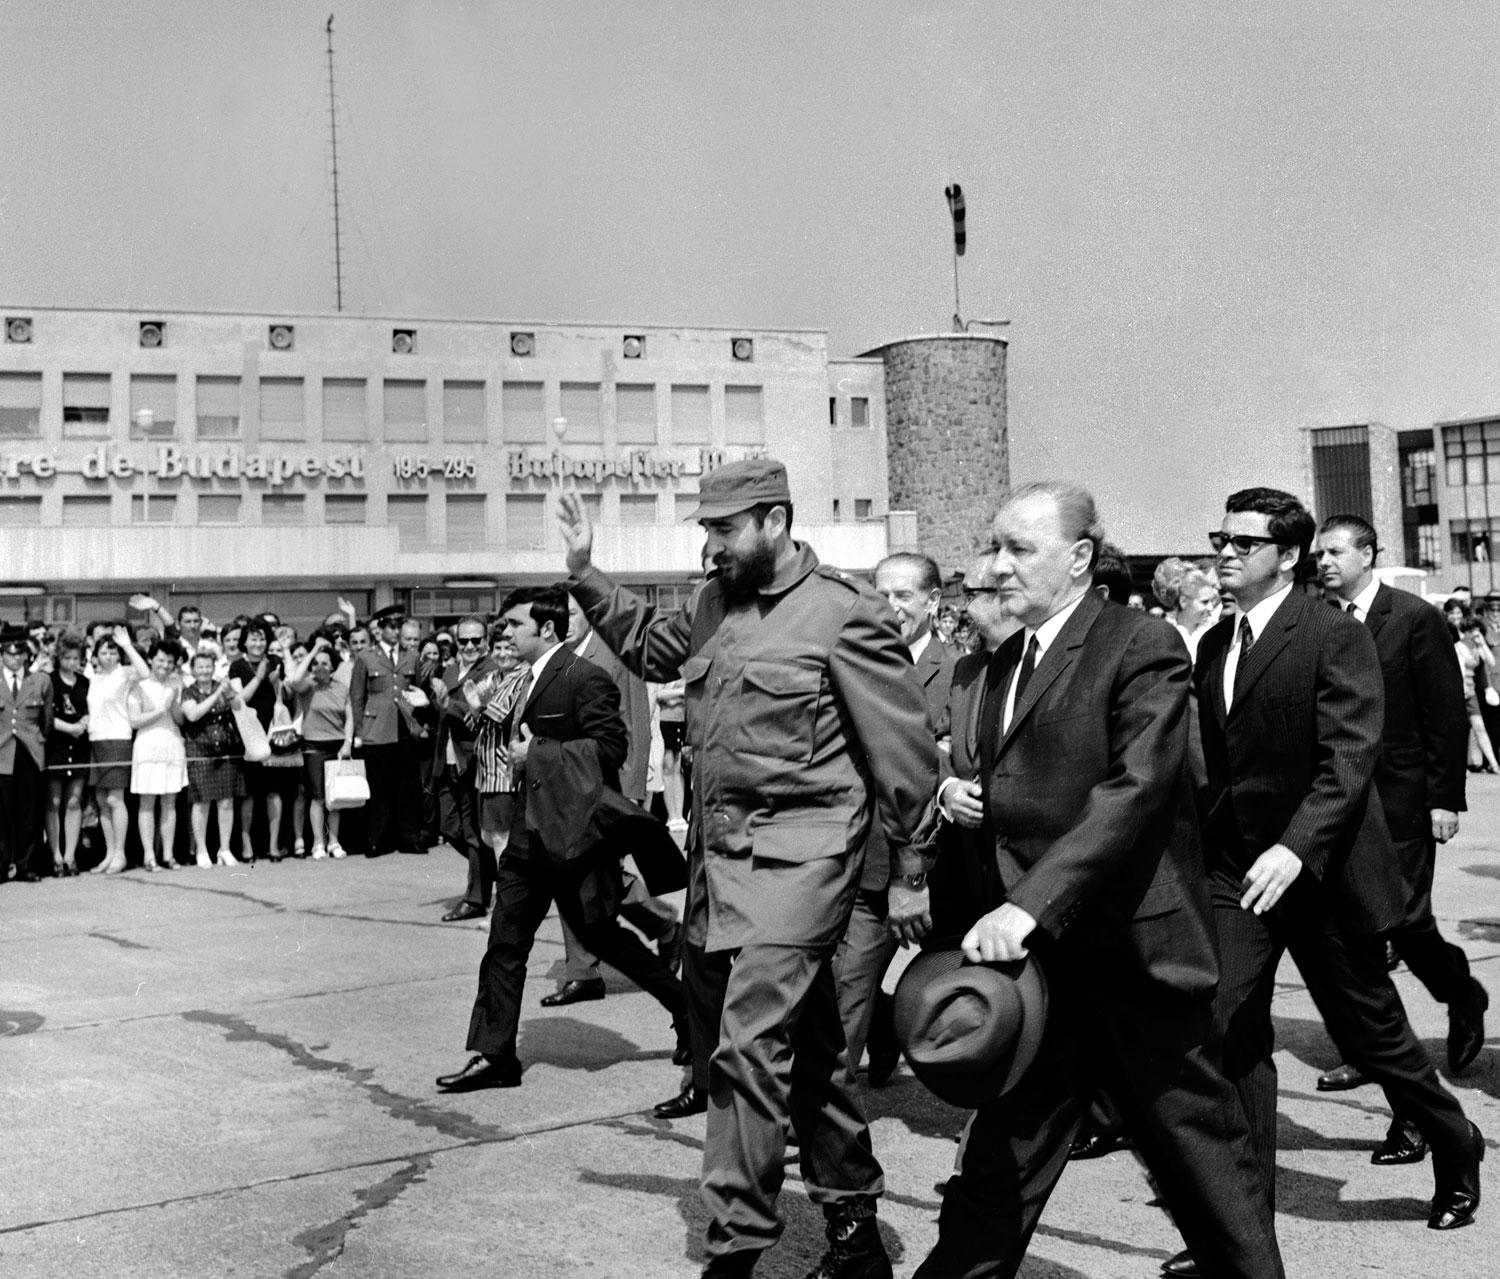 Uniformis és egyenöltöny: Castro és Kádár